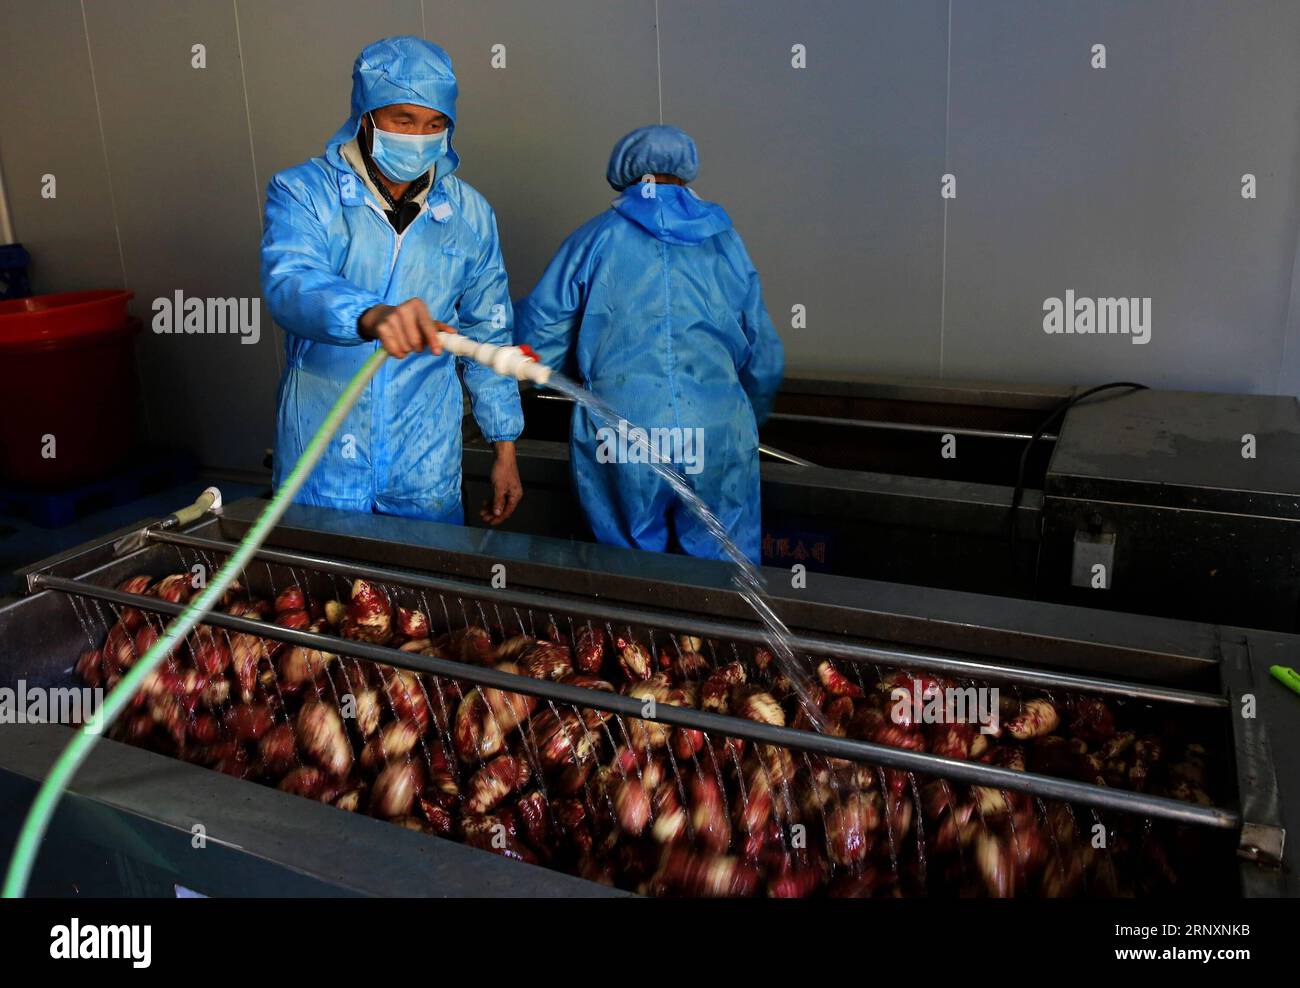 (180207) -- RONGSHUI, 7. Februar 2018 -- Arbeiter reinigen Süßkartoffeln in einer Fabrik im Eigentum von Shi Qiuxiang im Dorf Shuidong, Miao Autonomous County of Rongshui, südchinesische autonome Region Guangxi Zhuang, 5. Februar 2018. Shi Qiuxiang begann 2013 ihr Online-Geschäft in der Heimatstadt. Sie lernte zufällig eine Art Süßkartoffel kennen, die in Gebieten in großer Höhe gepflanzt wurde, und beschloss, ihr Geschäft zu entwickeln. Mit ihrer erfolgreichen Erfahrung förderte Shi ihre Art, Süßkartoffeln zu Pflanzen, in mehr als 1.000 Haushalten, die 2017 in Armut lebten. Nach einjähriger harter Arbeit wird die Jahresproduktion der pl Stockfoto